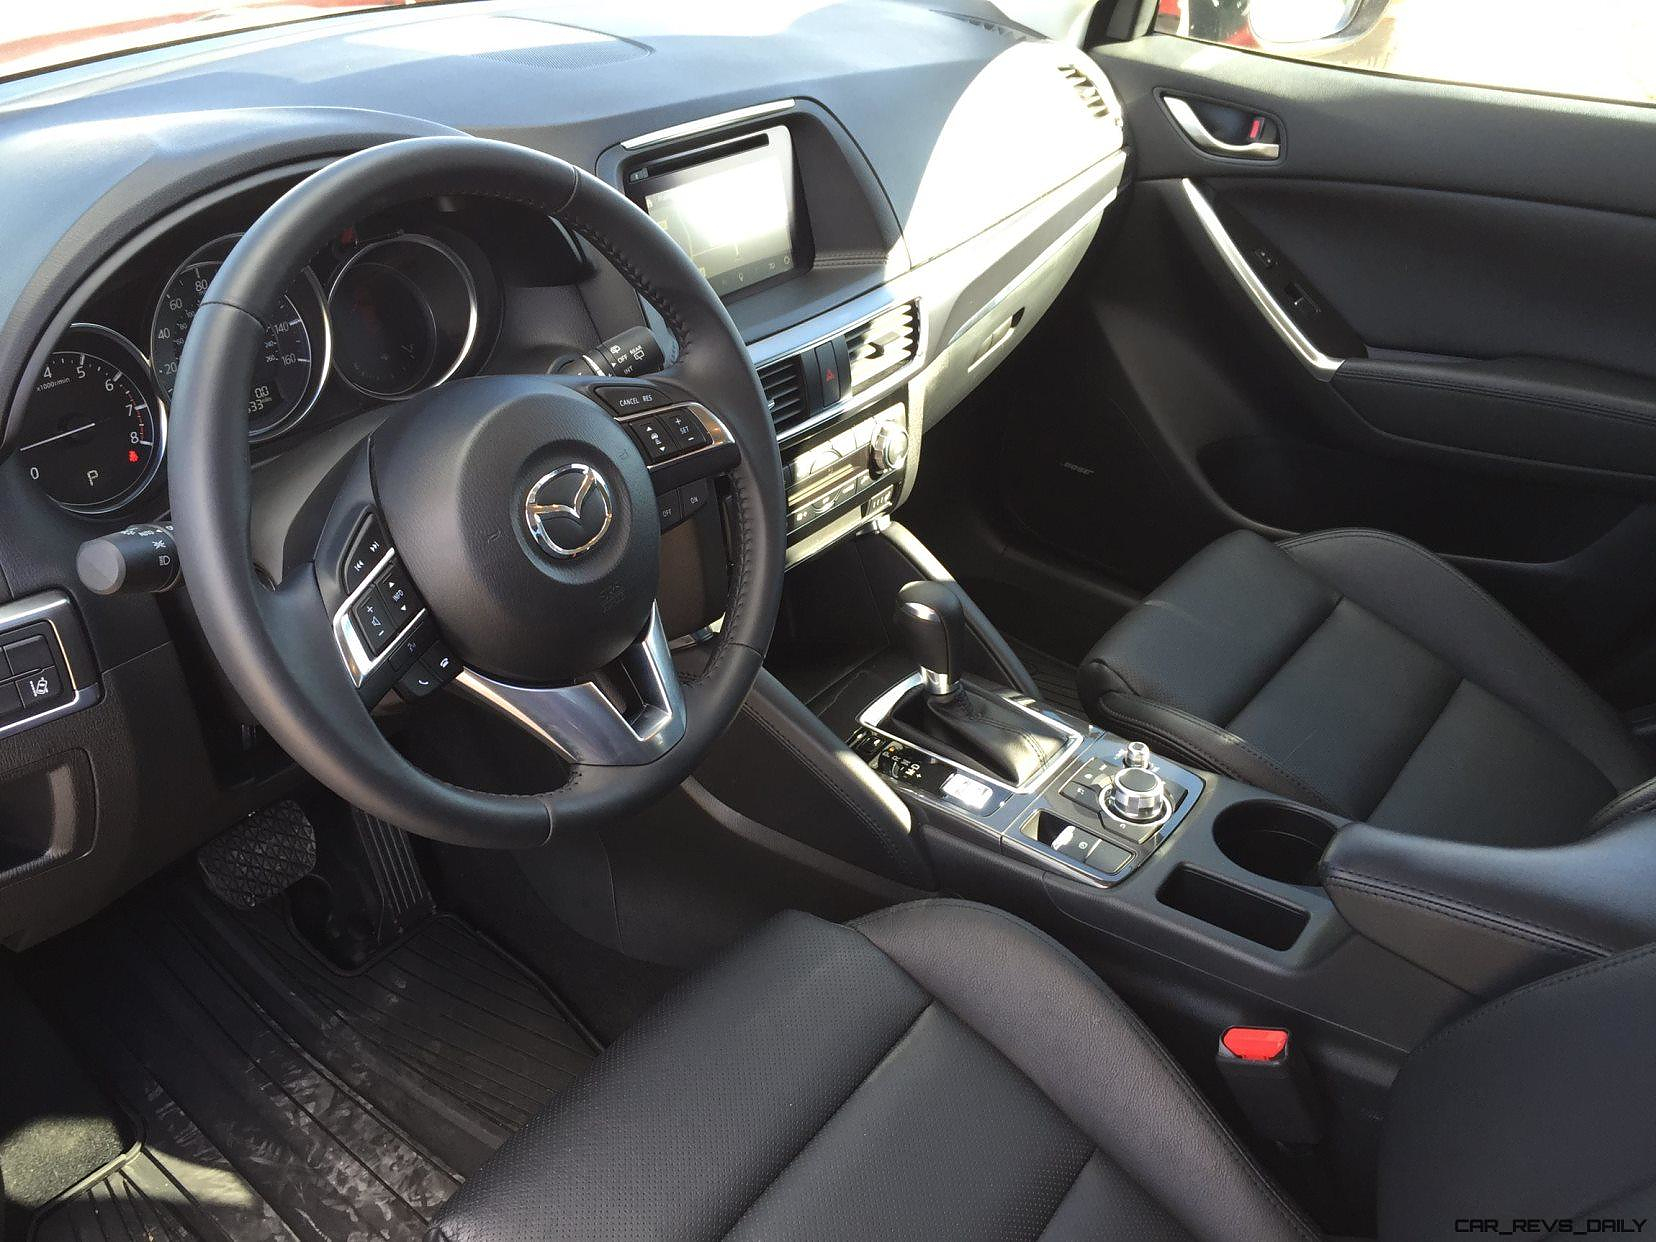 2016 Mazda Cx 5 Interior 21